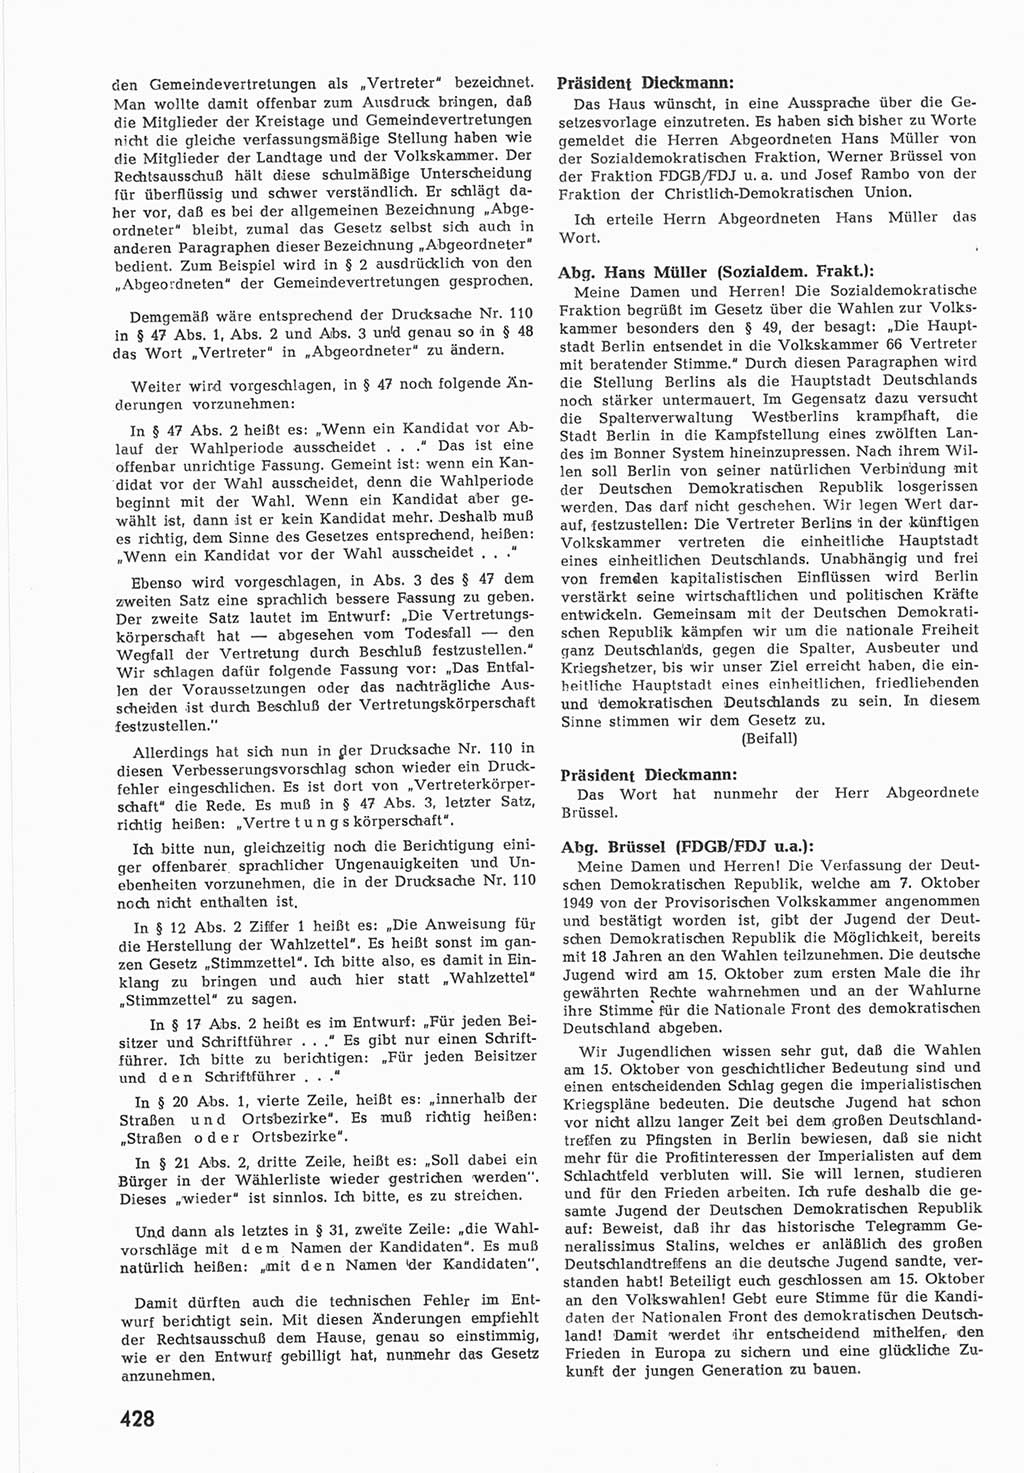 Provisorische Volkskammer (VK) der Deutschen Demokratischen Republik (DDR) 1949-1950, Dokument 446 (Prov. VK DDR 1949-1950, Dok. 446)